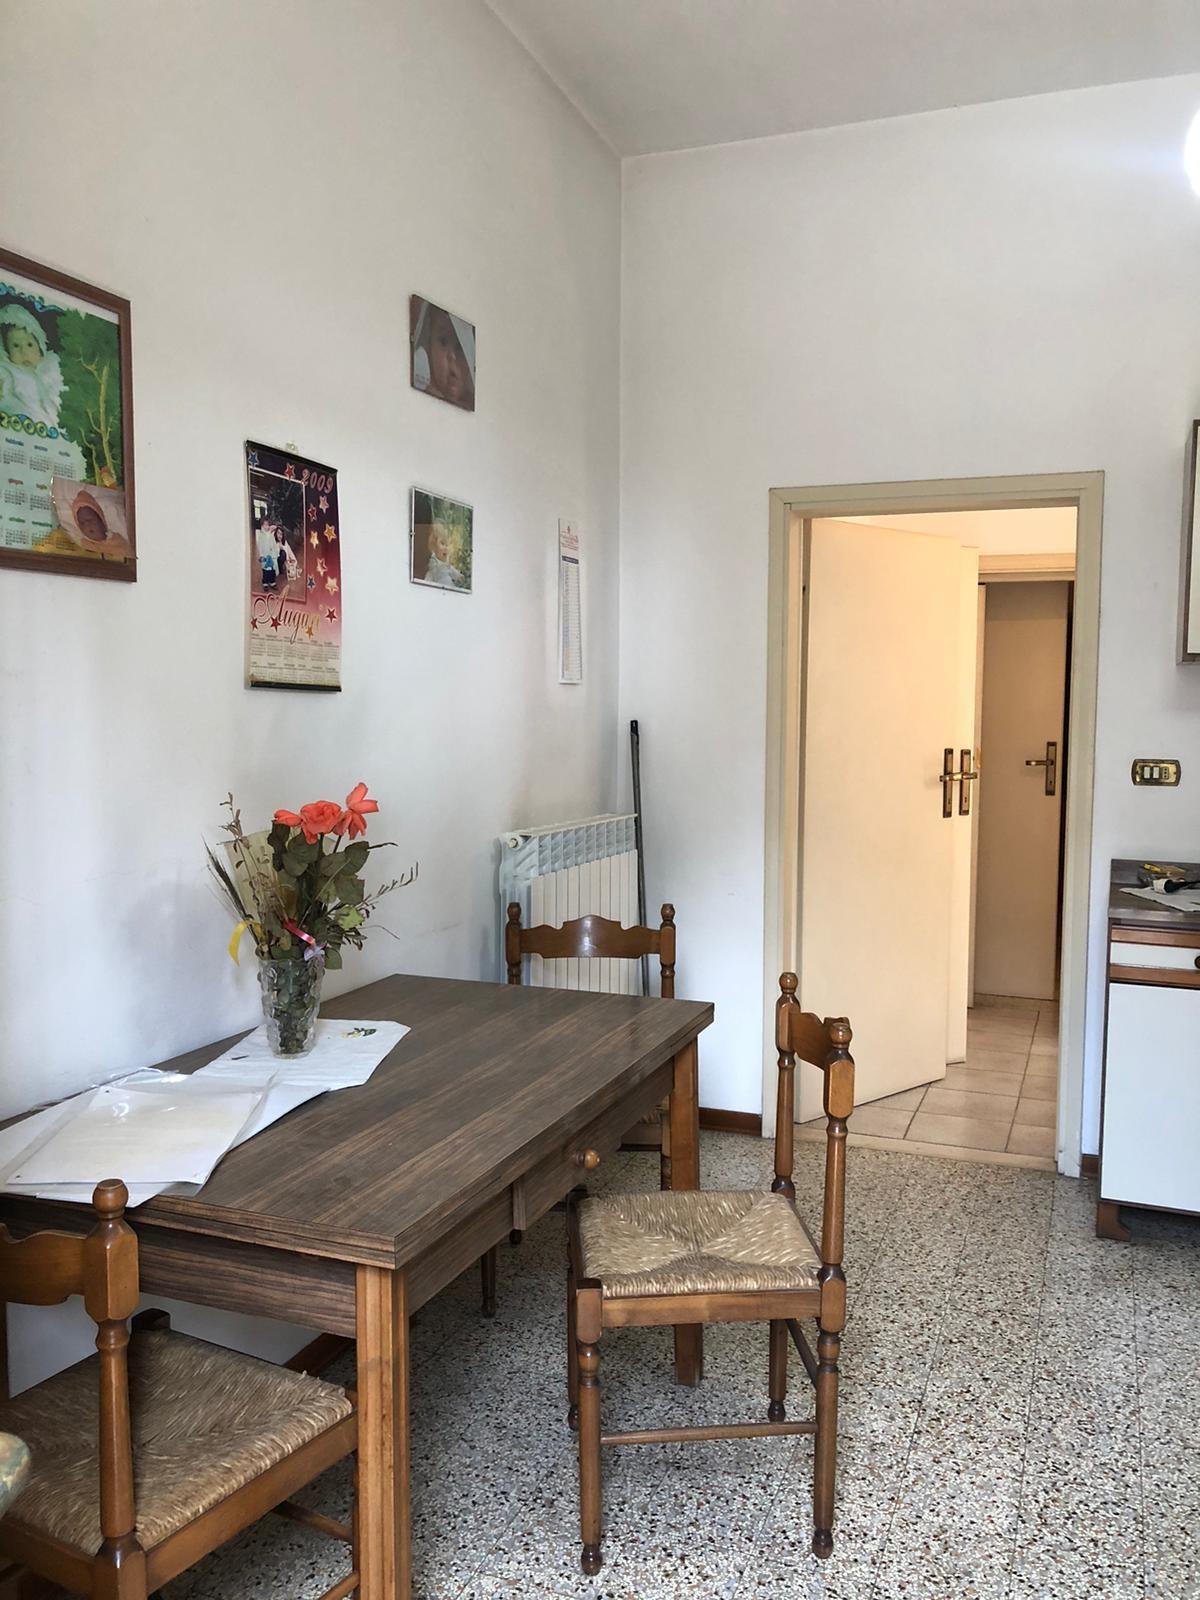 Villa Bifamiliare in vendita a Pontedera, 5 locali, prezzo € 135.000 | PortaleAgenzieImmobiliari.it